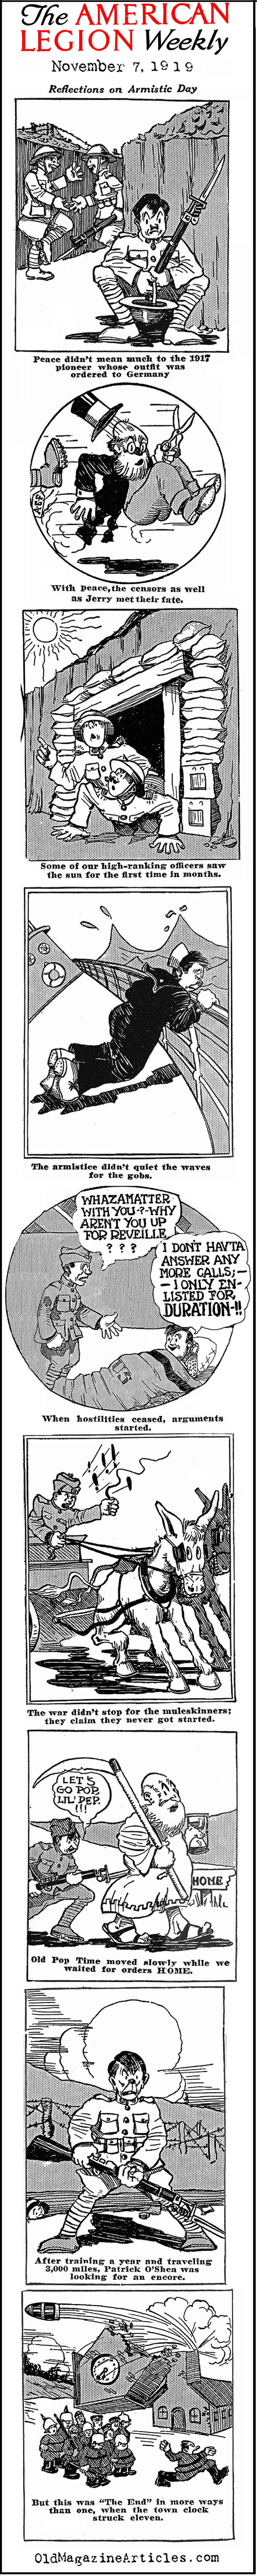 Armistice Cartoon (American Legion Weekly, 1919)